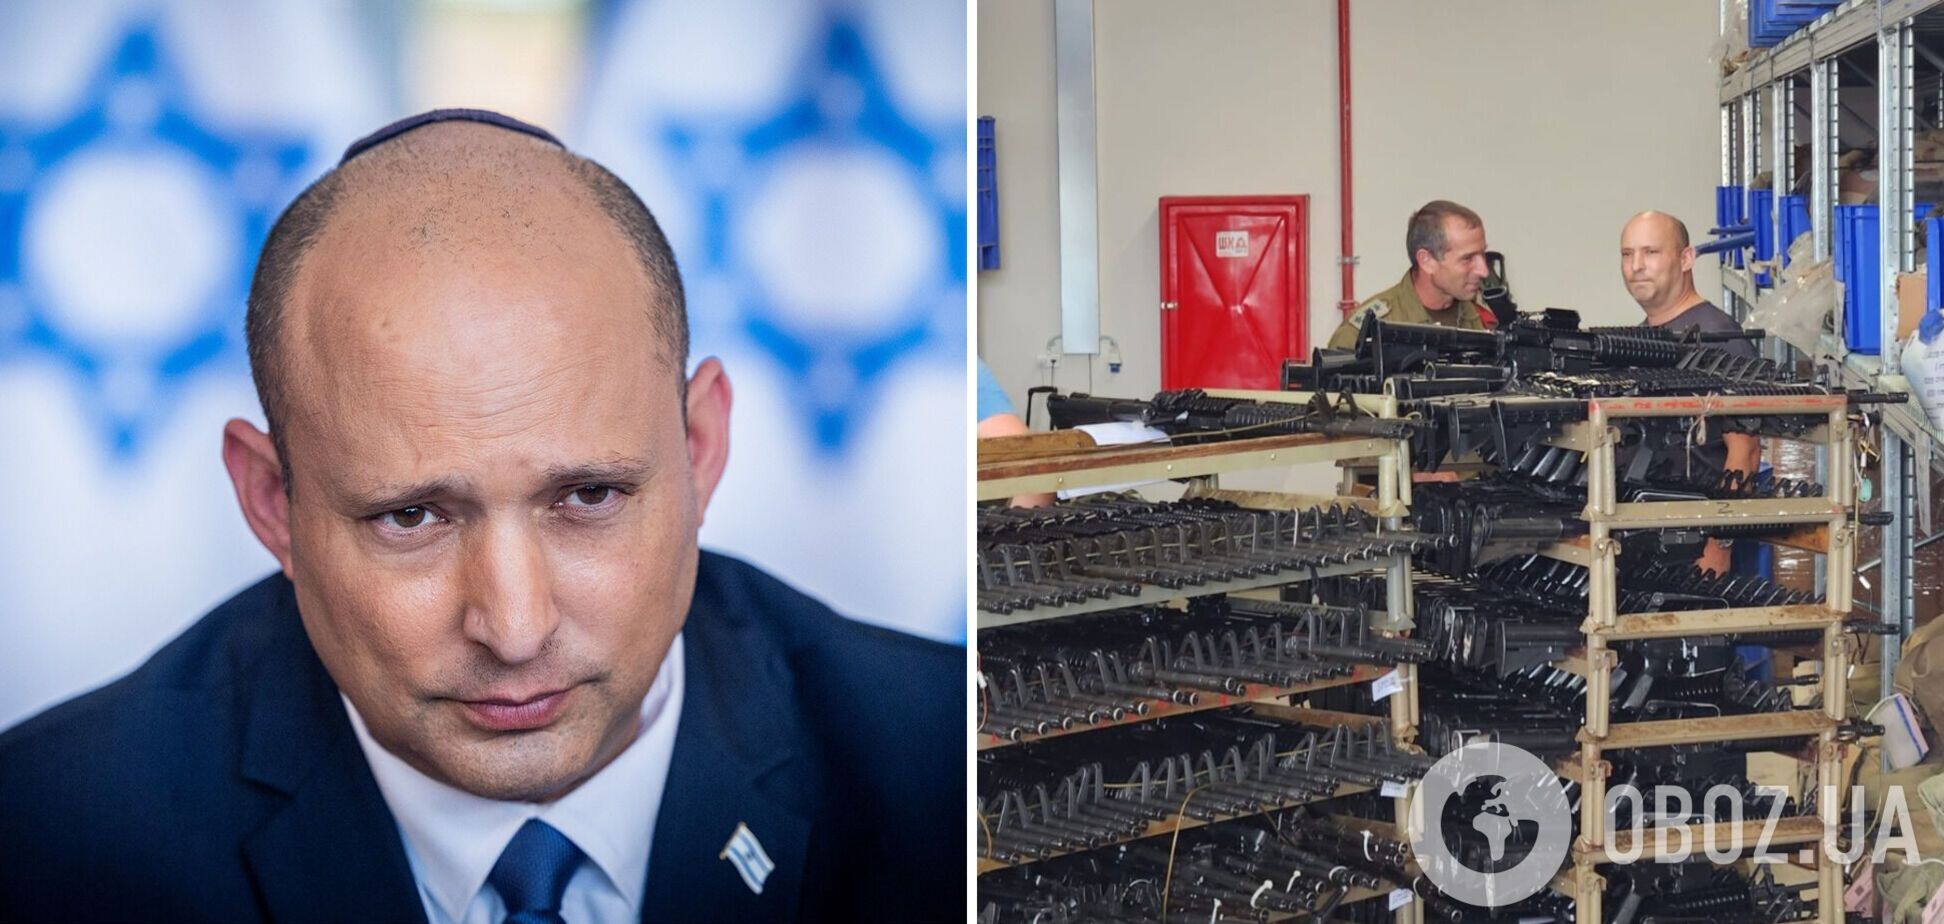 Колишній прем'єр-міністр Ізраїлю записався добровольцем у ЦАХАЛ: де він служитиме